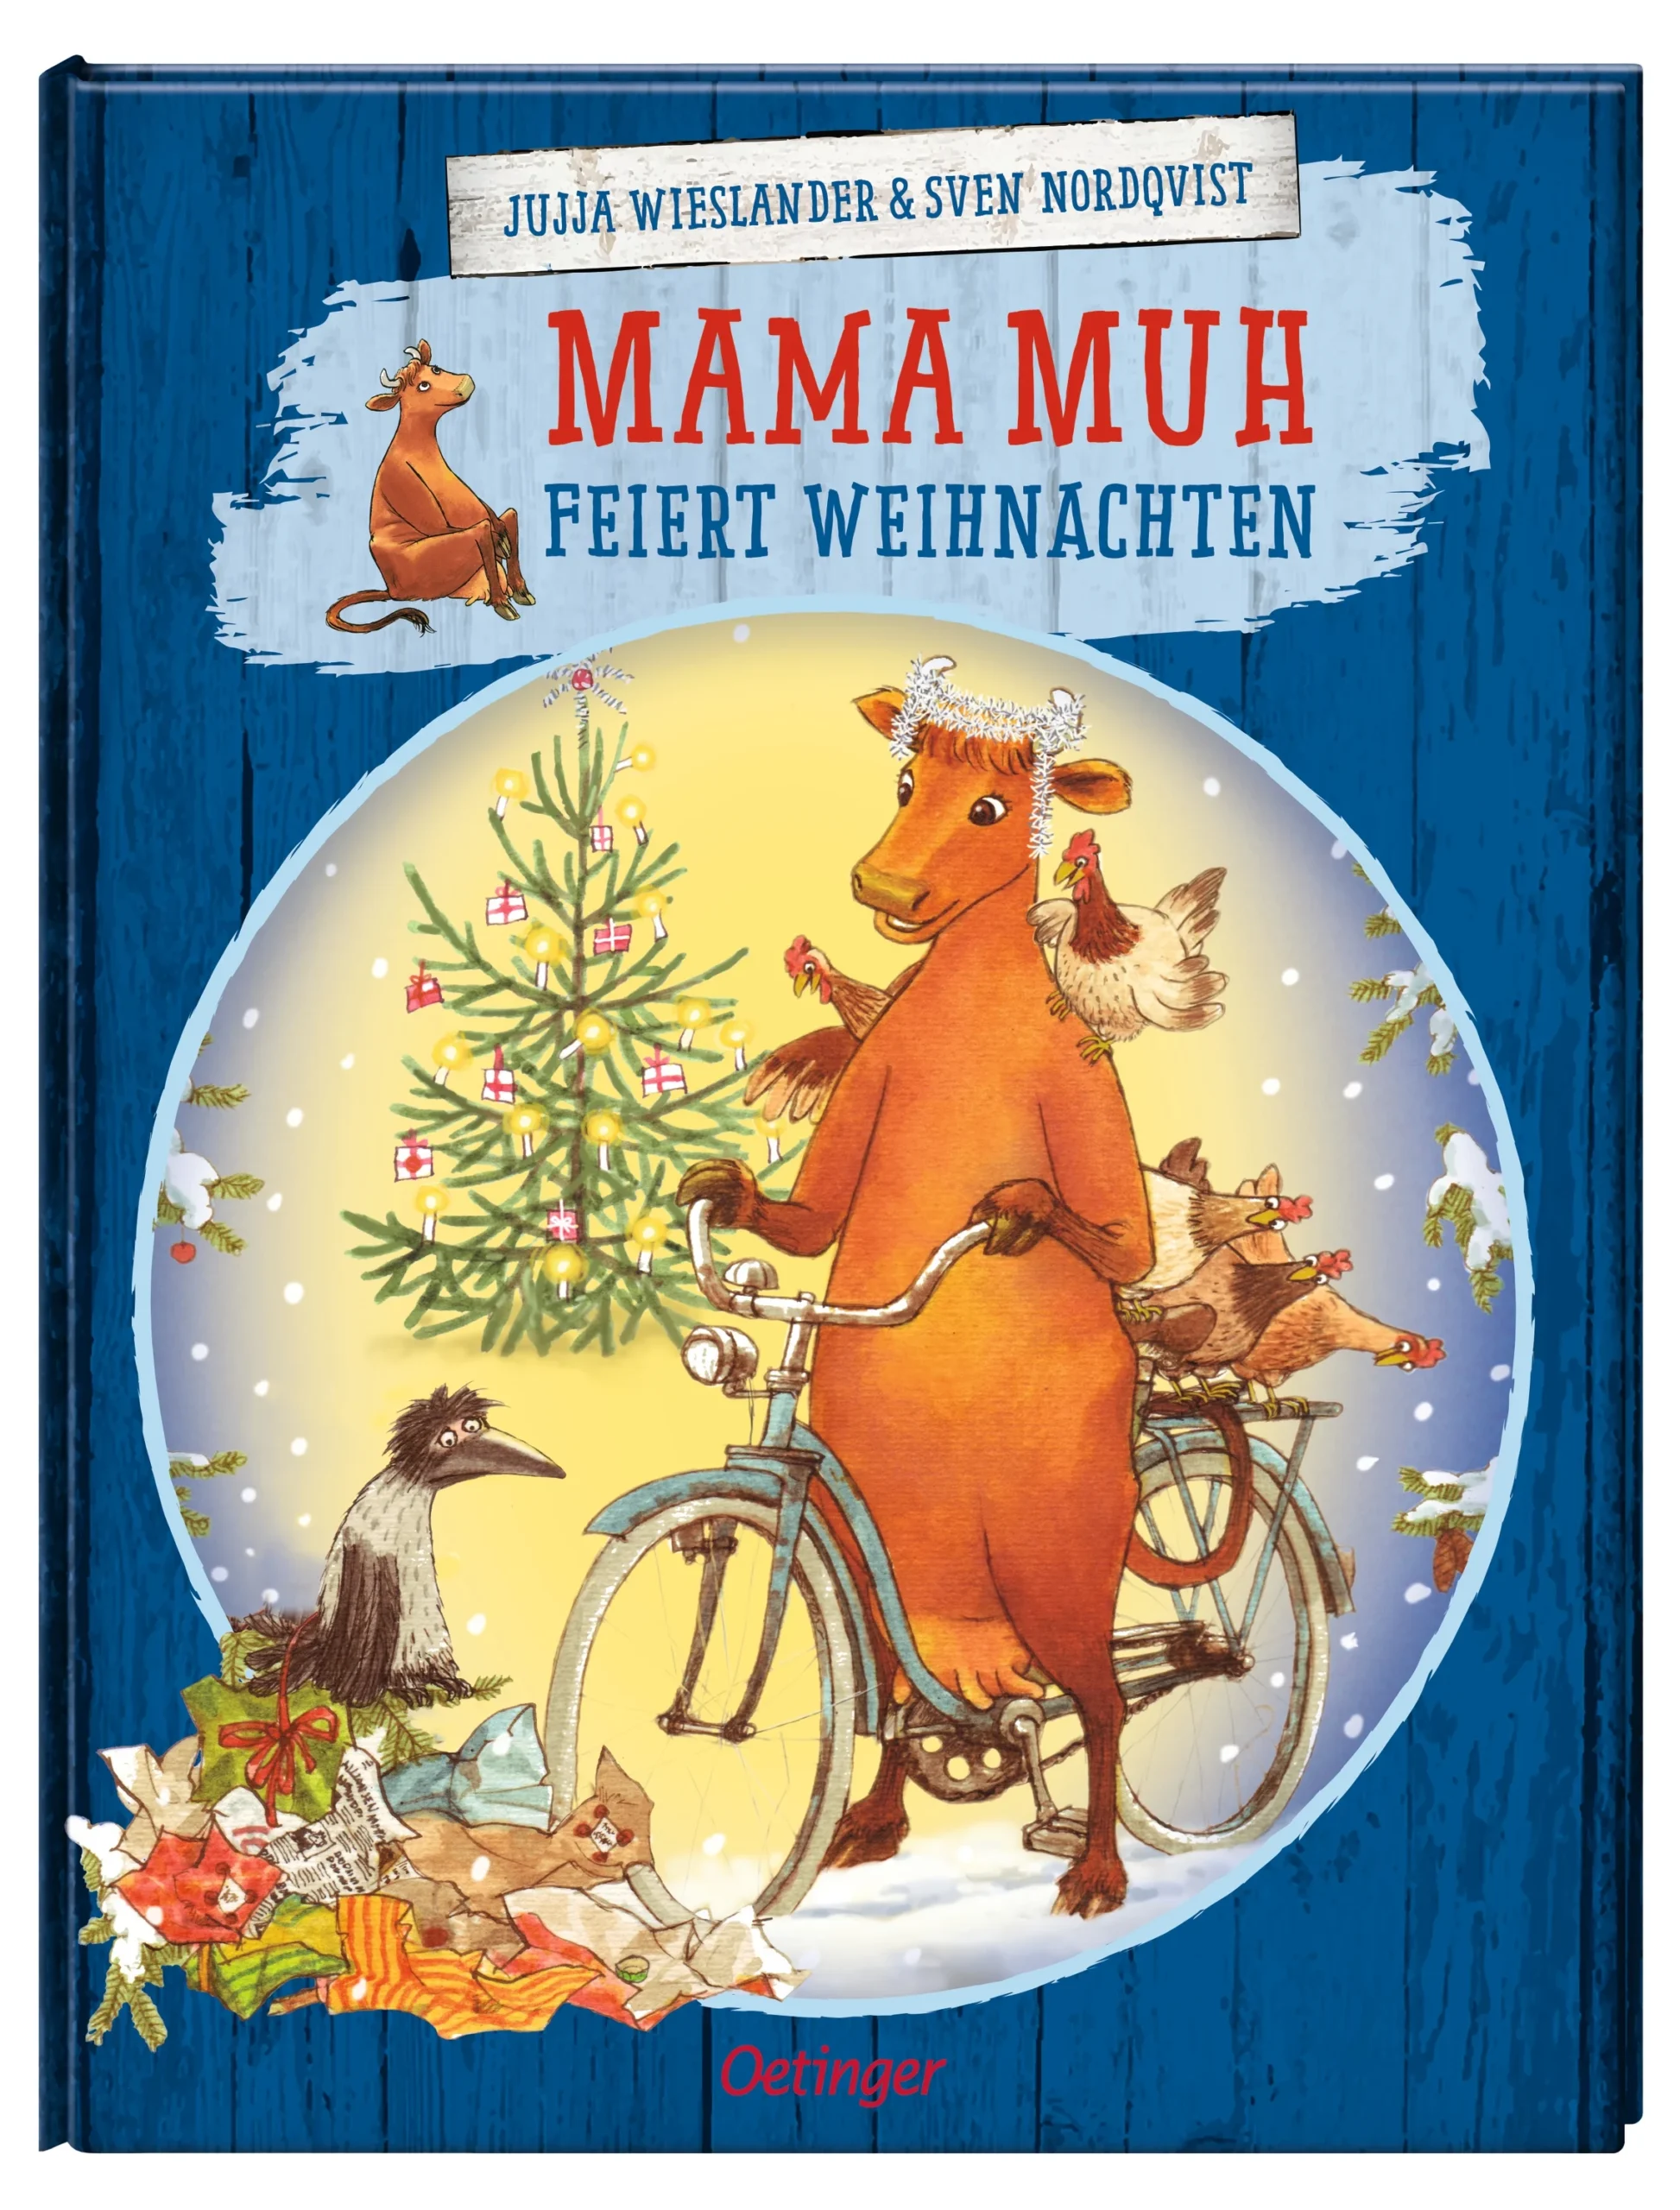 Mama Muh feiert Weihnachten Band 7 ist eine unterhaltsame Geschichte wie Kuh und Krähe zusammen Weihnachten feiern.